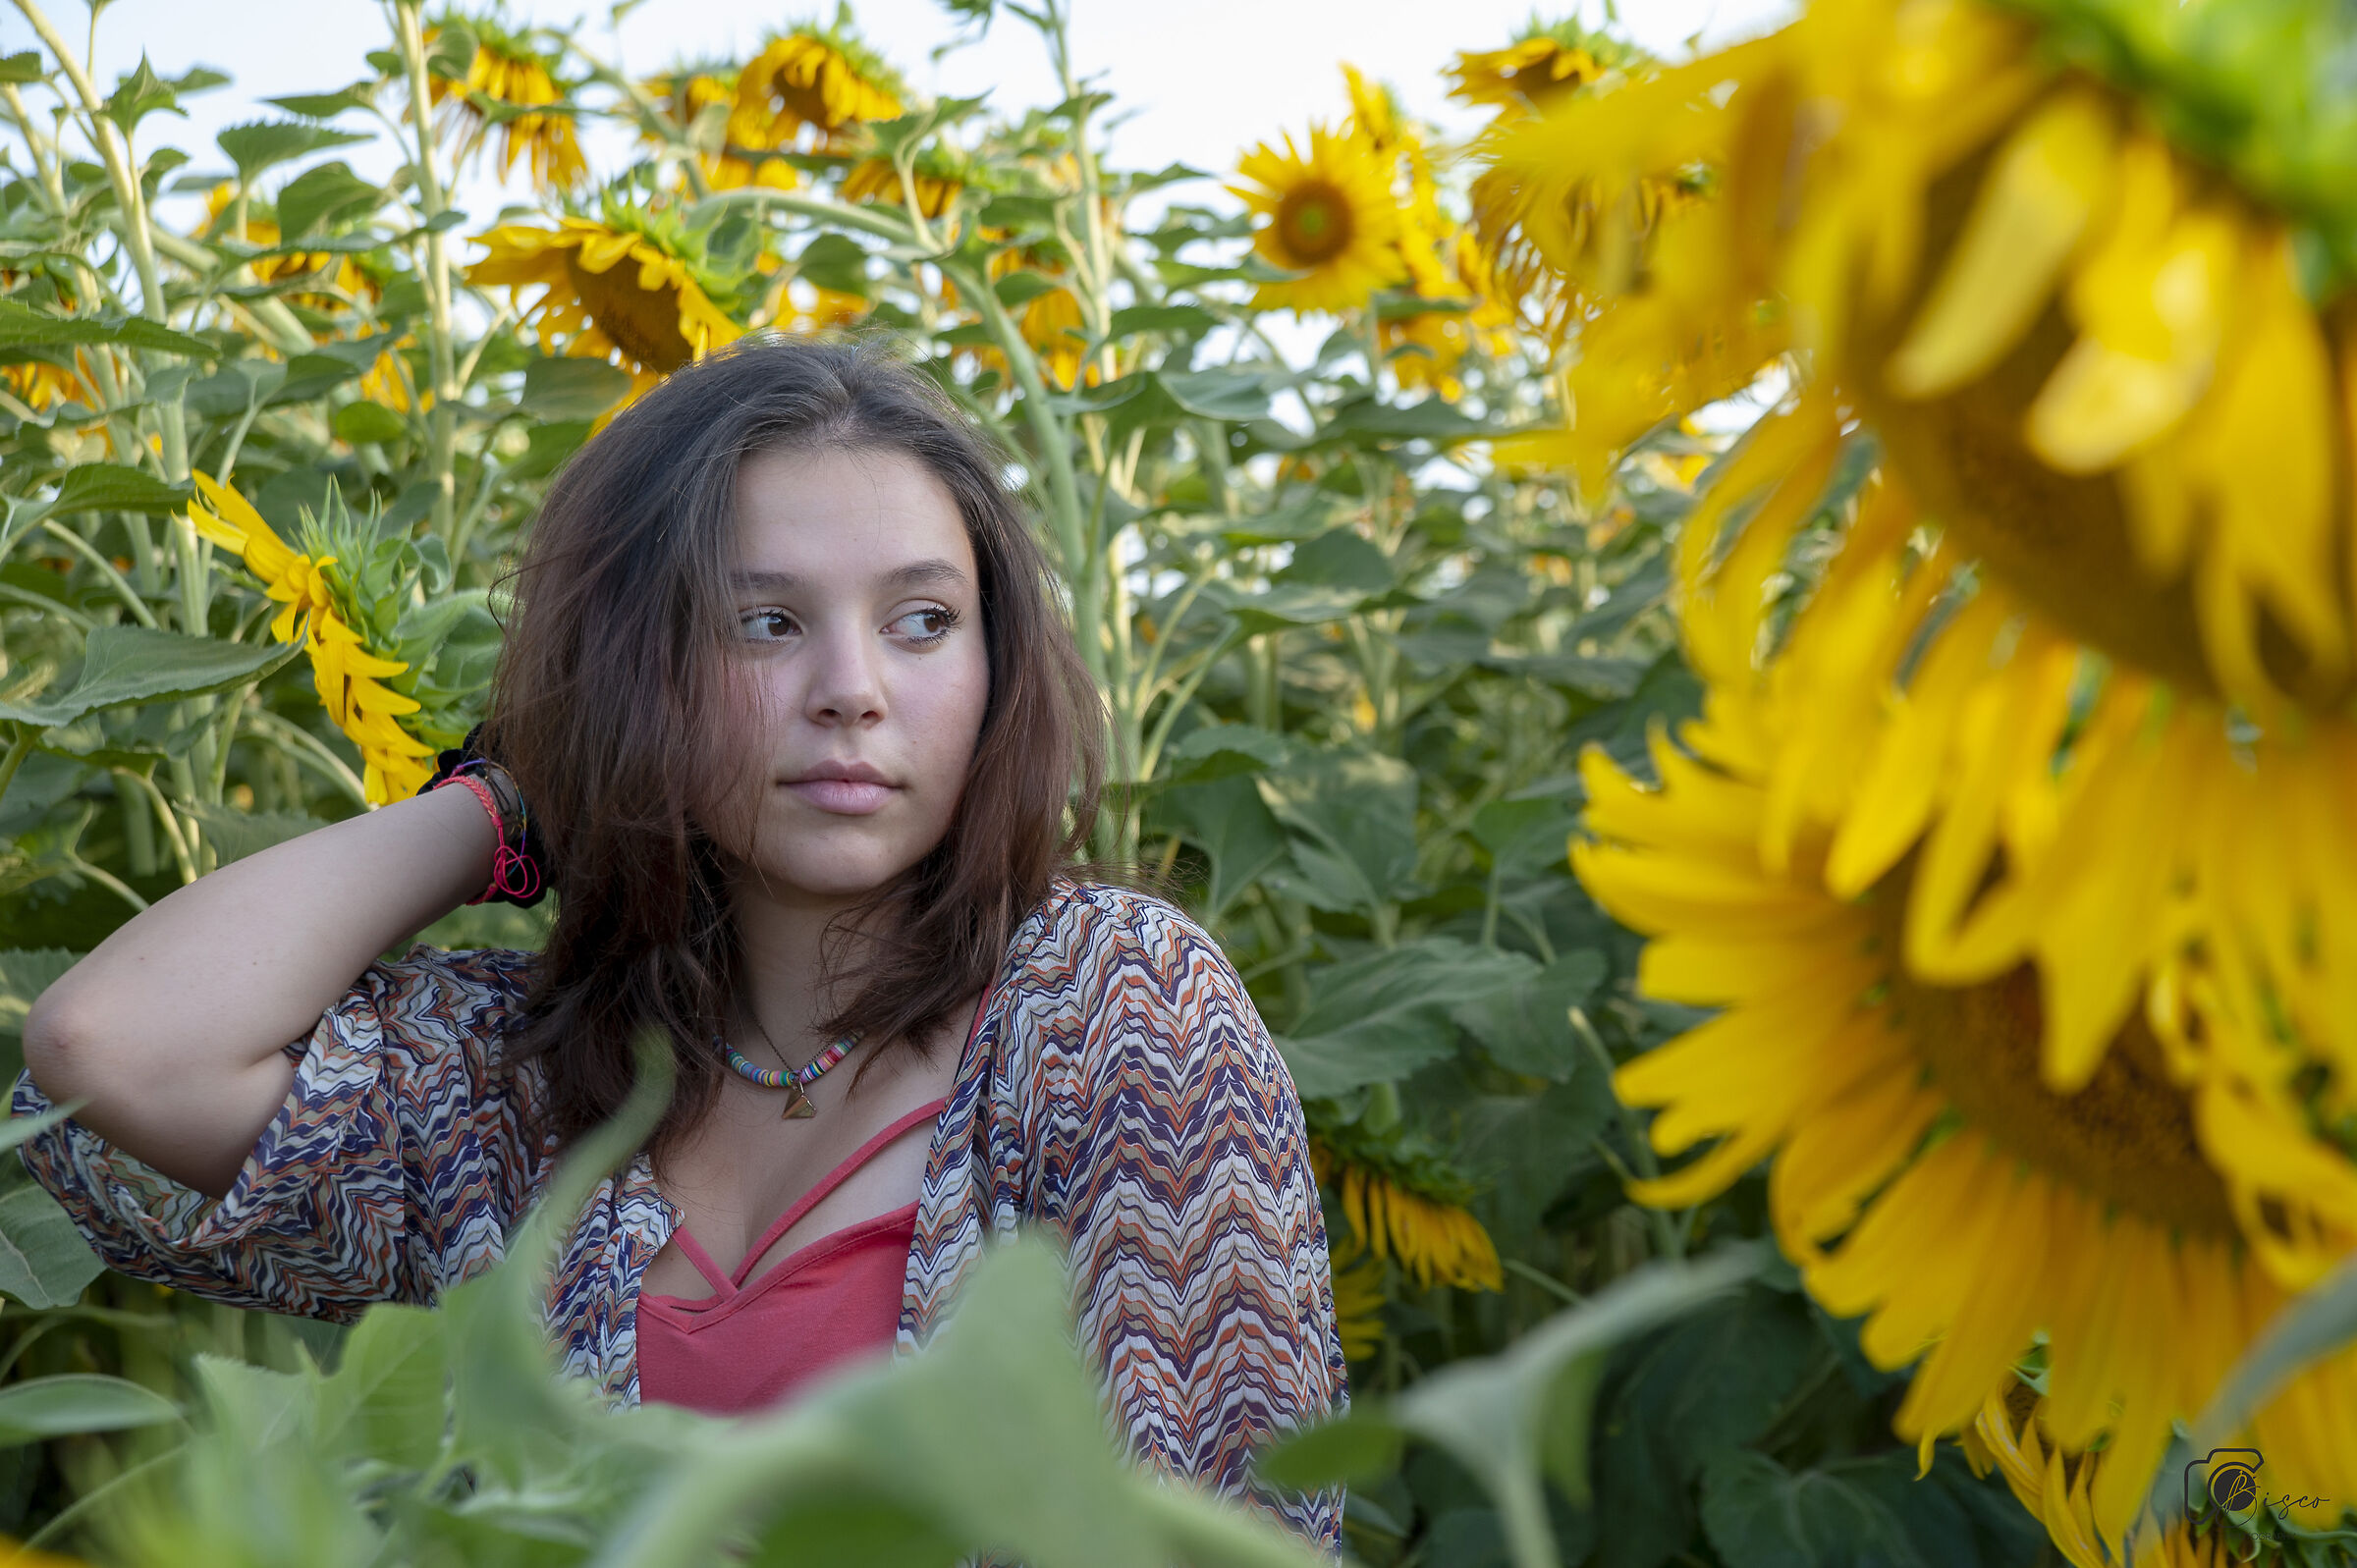 Rebecca among sunflowers...